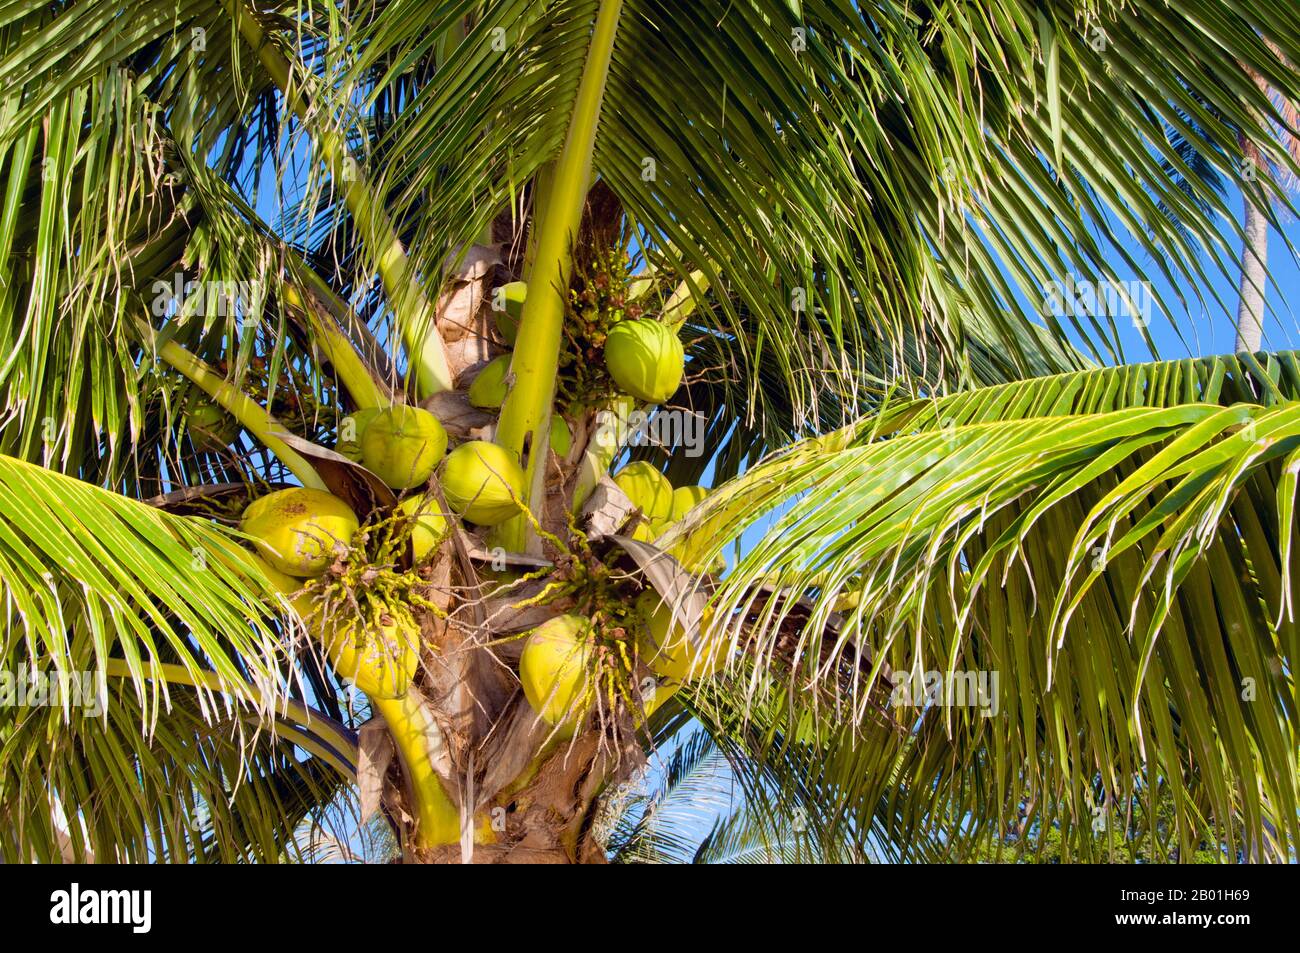 Thailand: Kokospalme, hat Sai Ri, Ko Tao. Die Kokospalme, auch Cocos nucifera genannt, wird nicht nur wegen ihrer Schönheit, sondern auch als lukrative Ernte geschätzt. Es wird in der gesamten Südsee und im Indischen Ozean angebaut und bietet Essen, Getränke, Unterkünfte, Transport, Treibstoff, Medizin und sogar Kleidung für Millionen von Menschen. Die Kokospalme lebt etwa 60 Jahre und produziert jährlich rund 70-80 Nüsse. Die Bäume sind manchmal 40-50 Meter (130-160 Fuß) hoch. Stockfoto